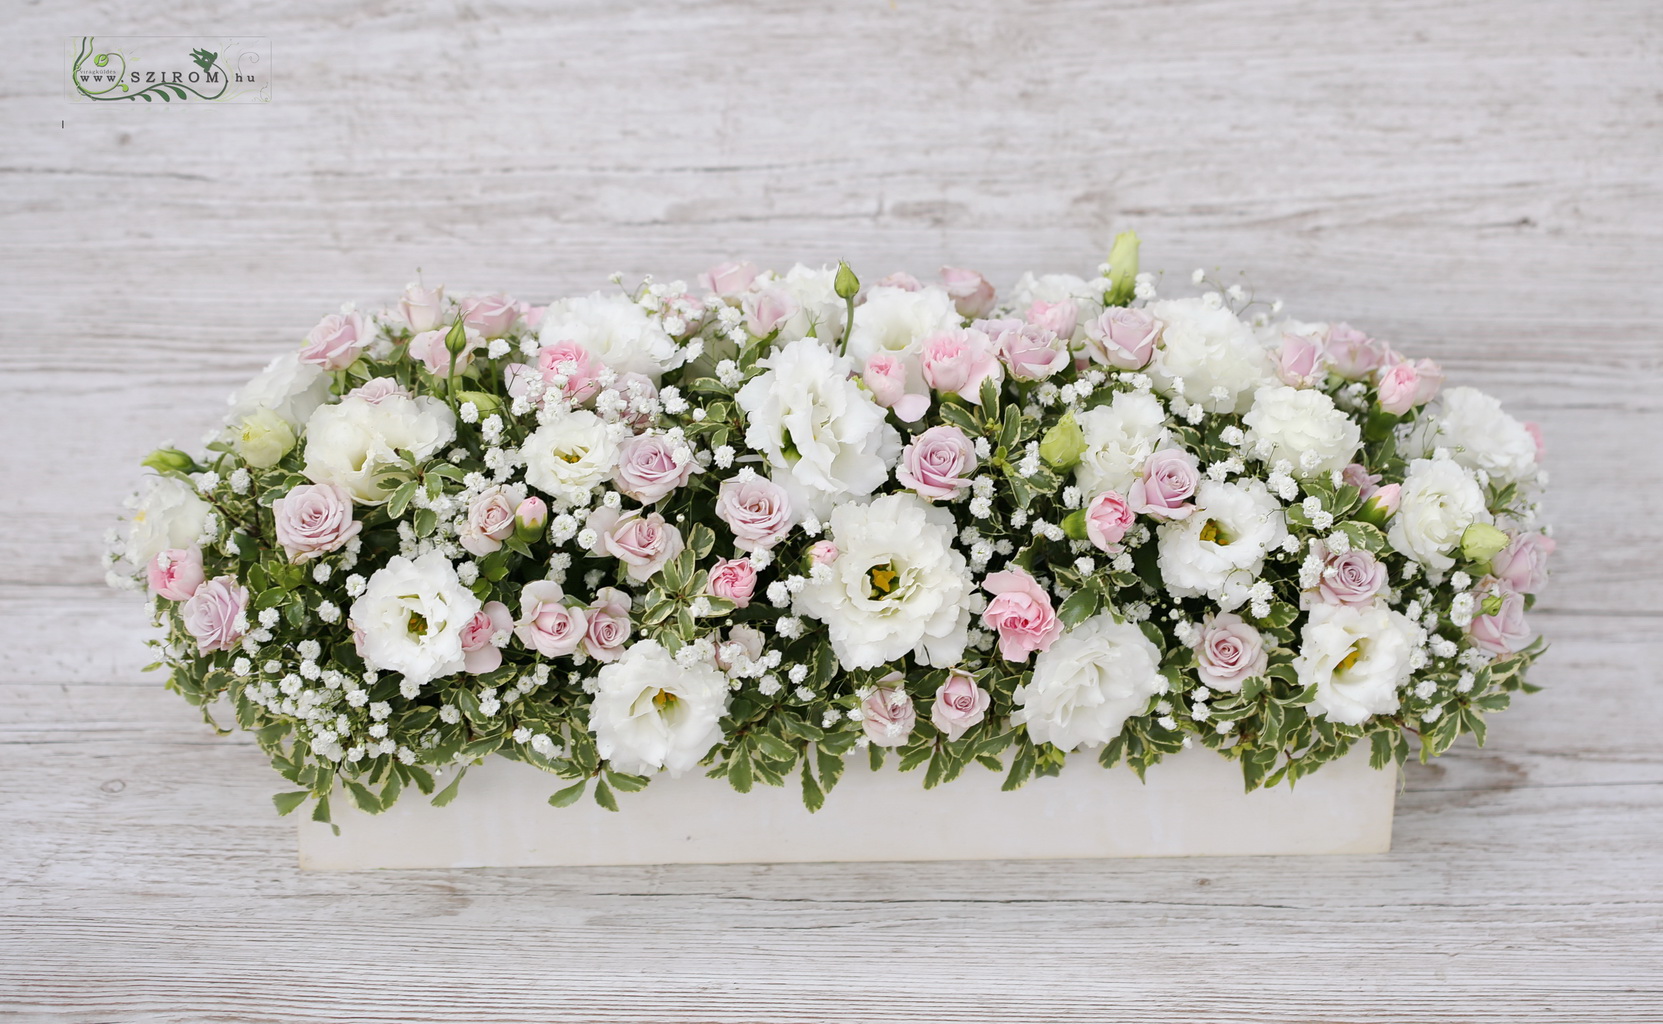 Főasztaldísz fadobozban (liziantusz, bokros rózsa, rezgő, fehér, halvány rózsaszín)